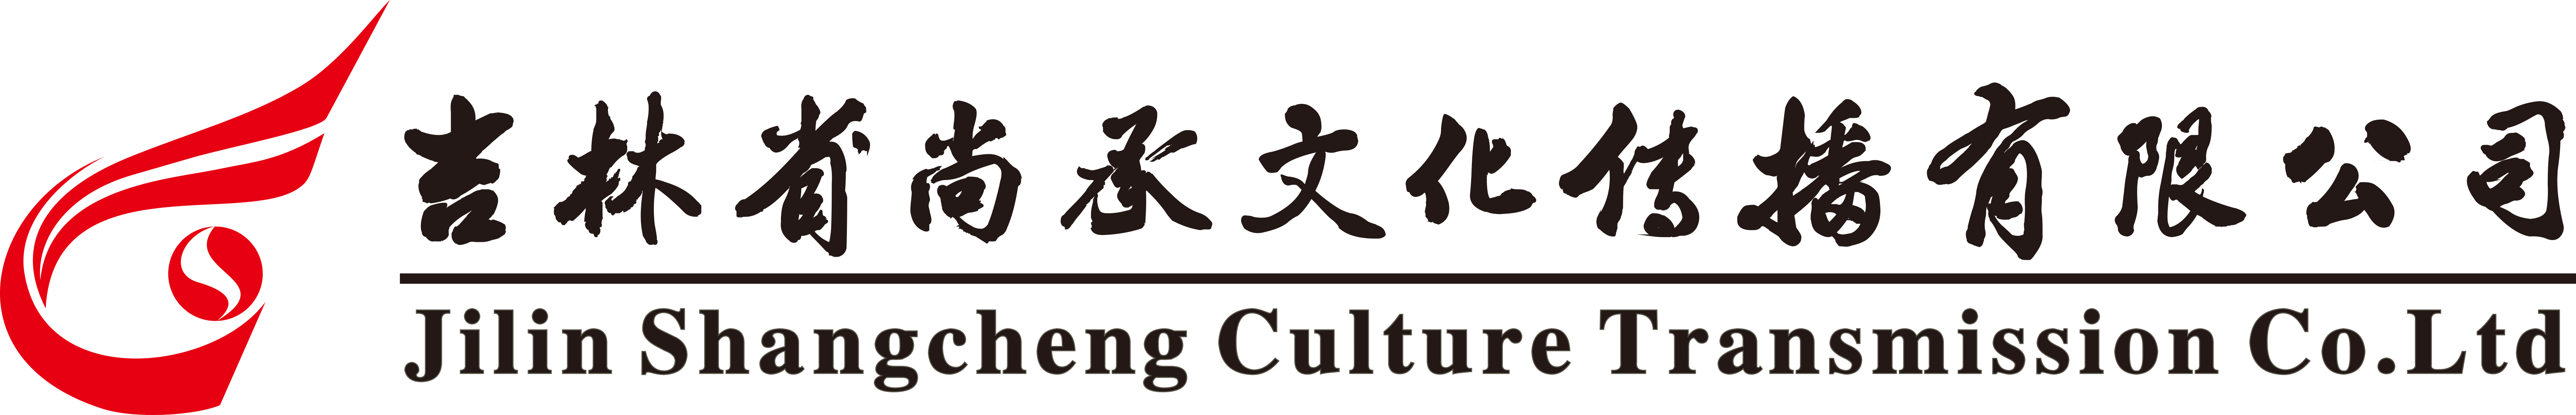 吉林省尚承文化传播有限公司